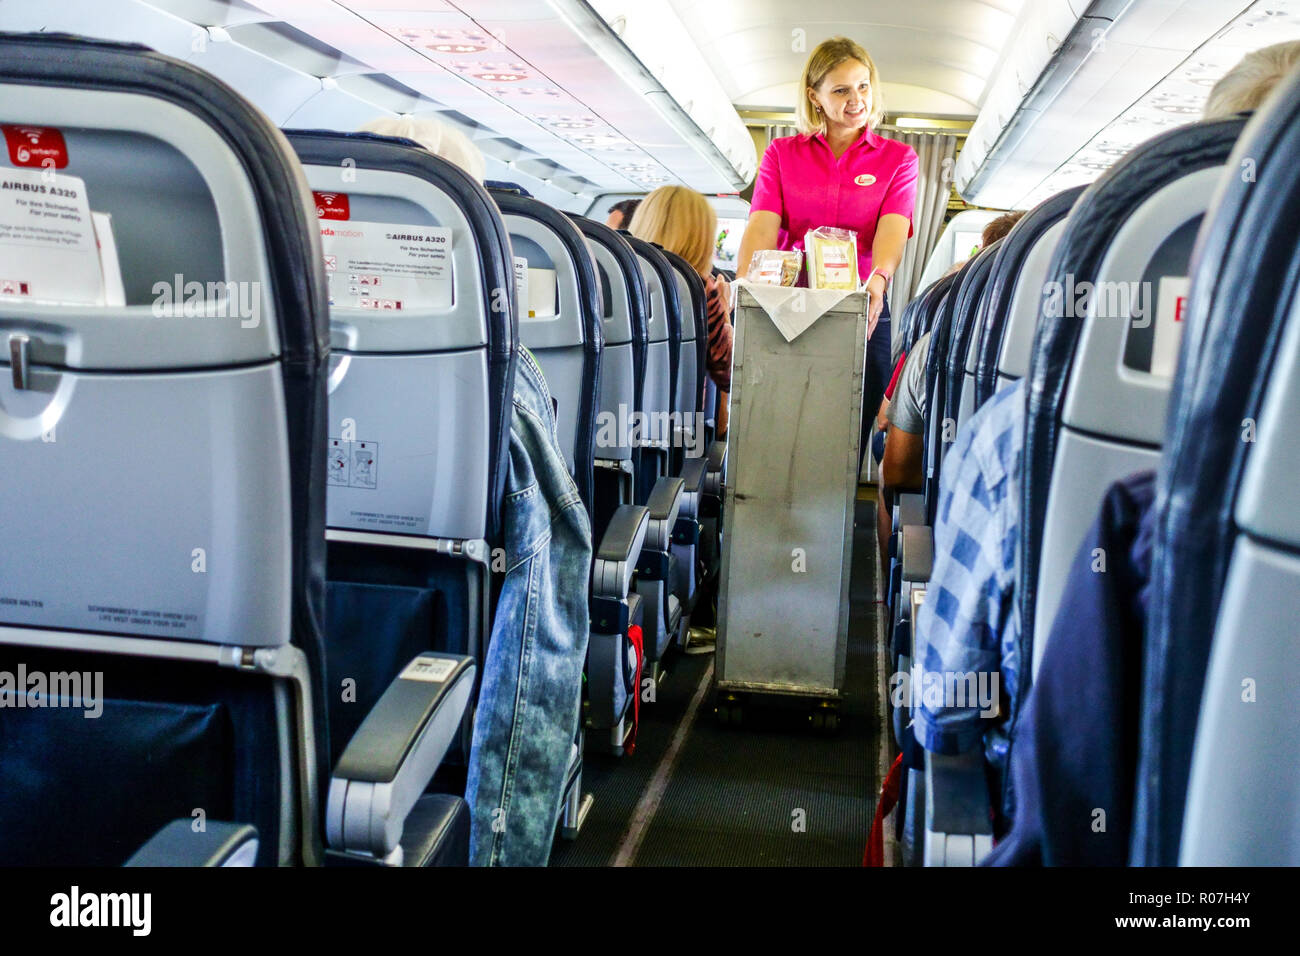 A bord de l'Airbus A320 de Laudamotion, une hôtesse située dans une allée étroite entre les sièges offre des marchandises provenant des sièges d'avion de tramway Banque D'Images